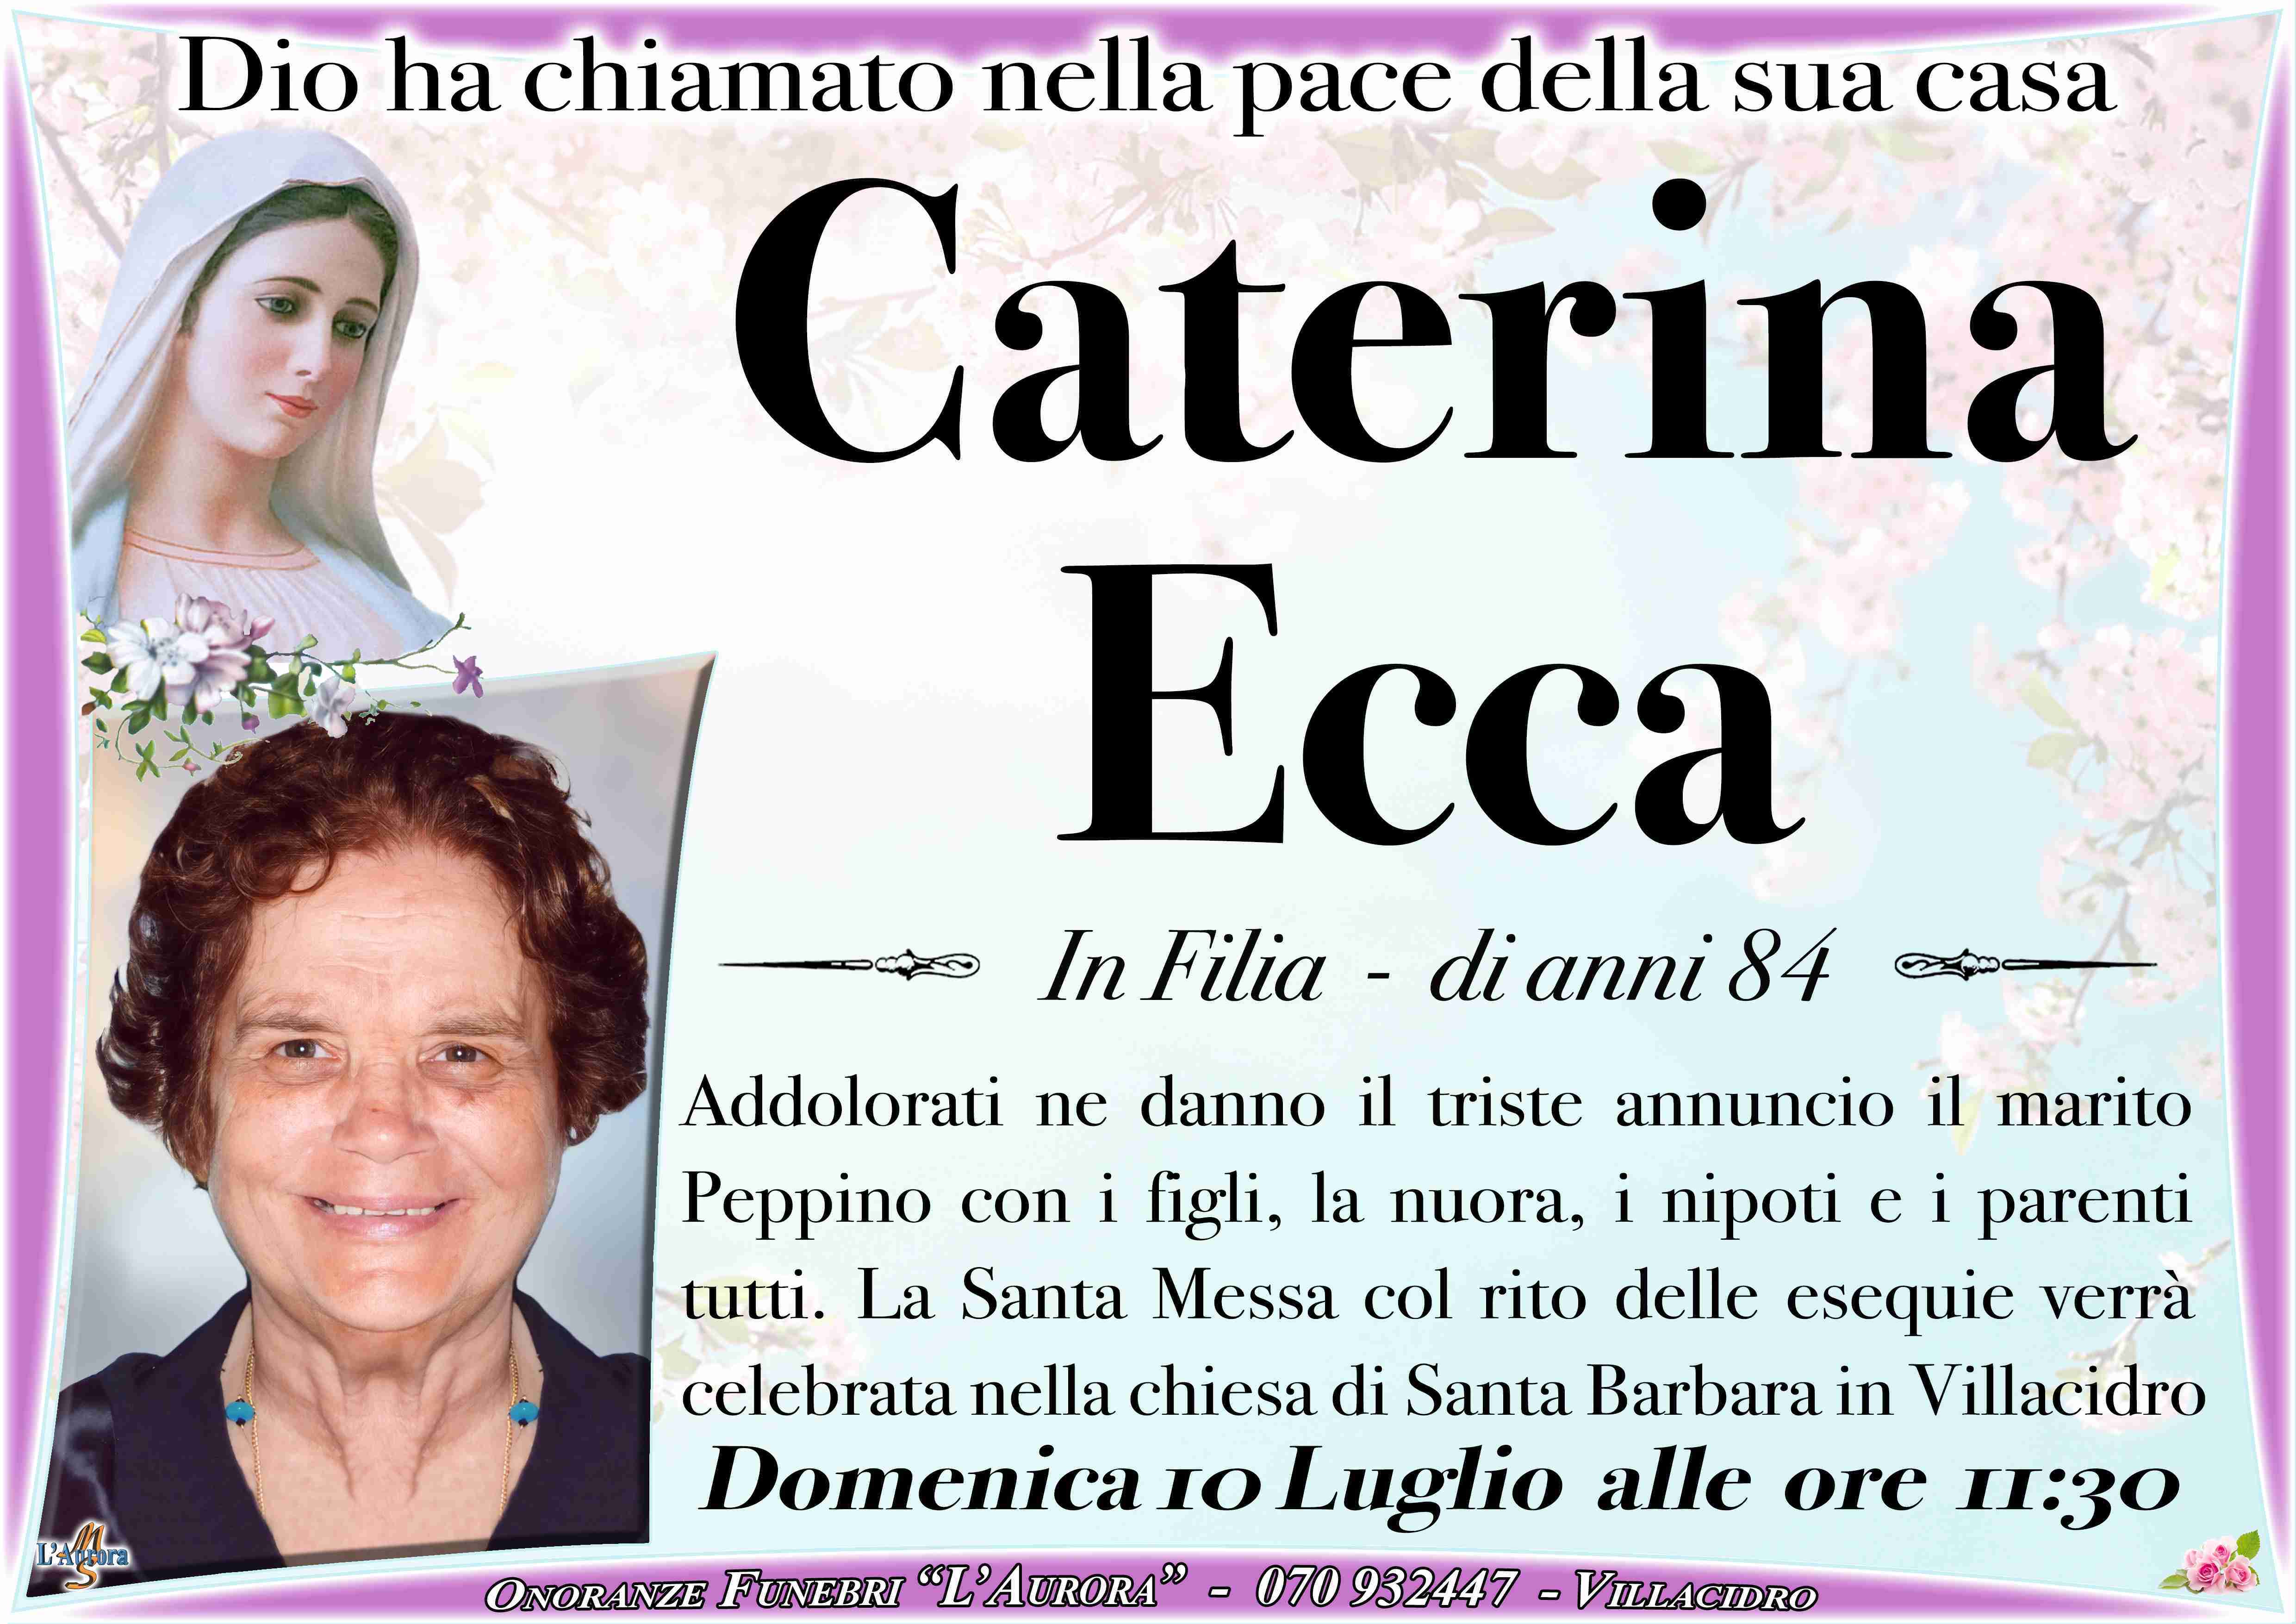 Caterina Ecca